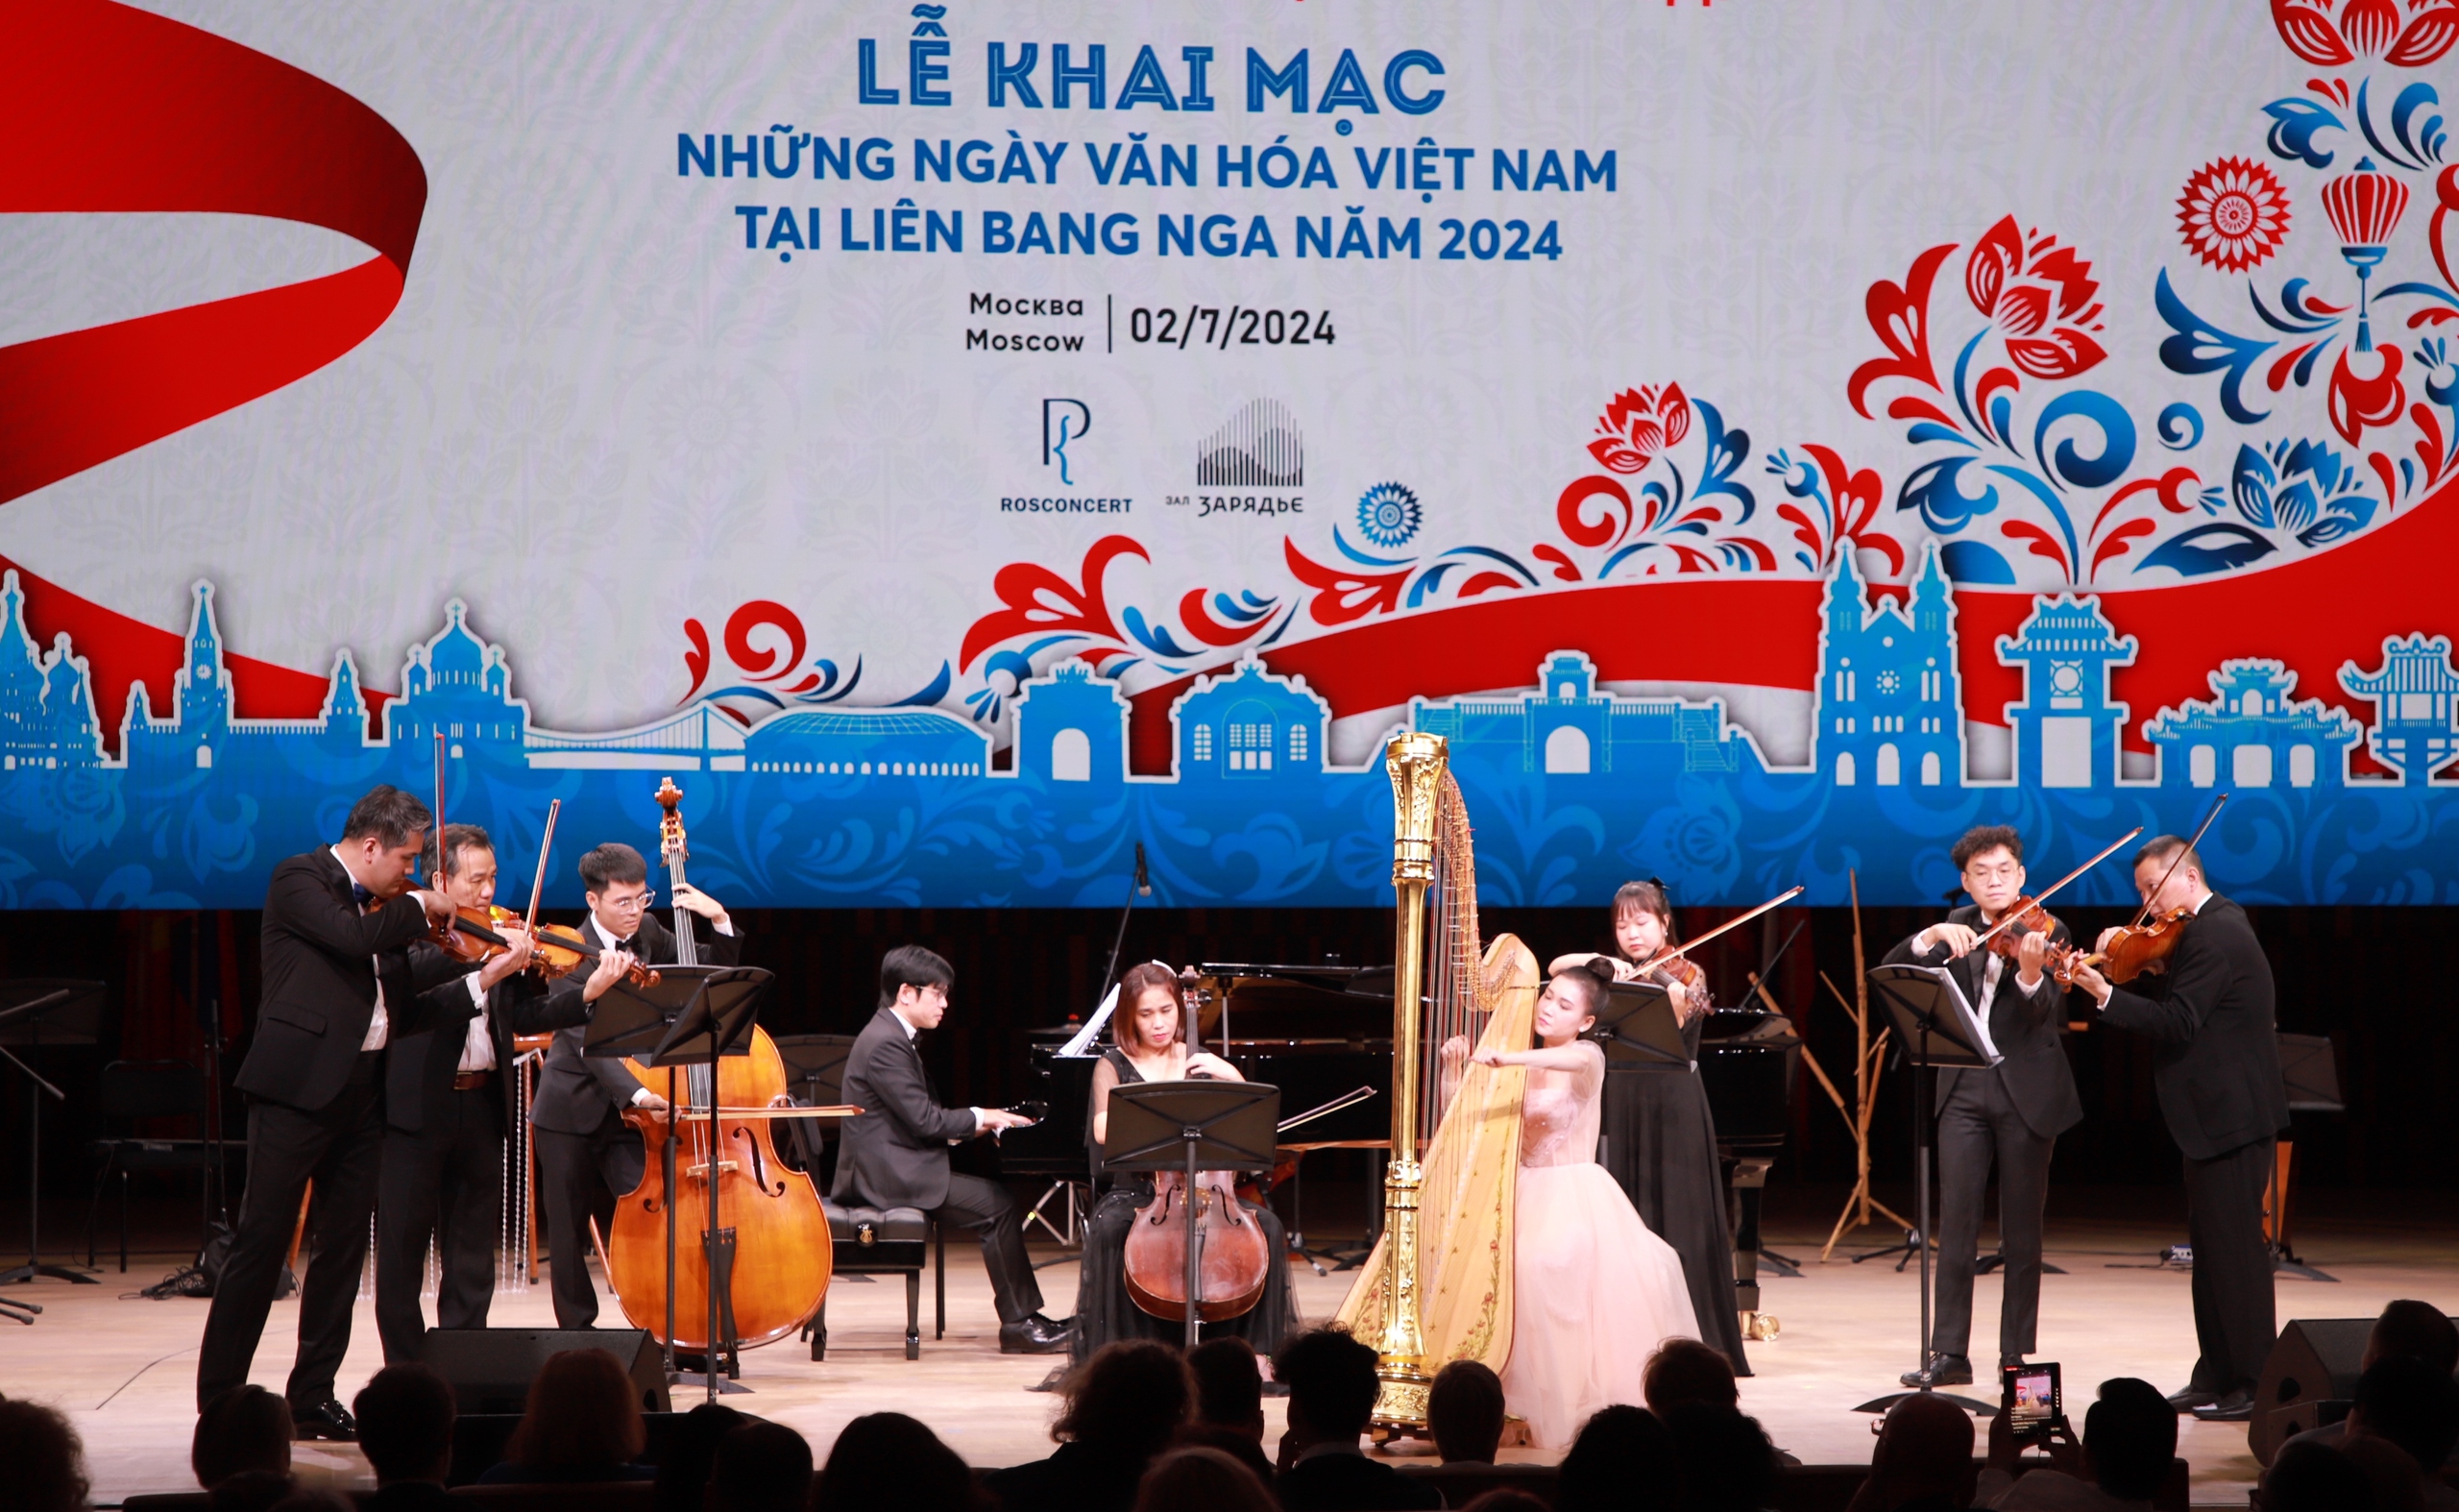 Chùm ảnh: Đặc sắc đêm khai màn Những ngày văn hóa Việt Nam tại Liên bang Nga - Ảnh 3.